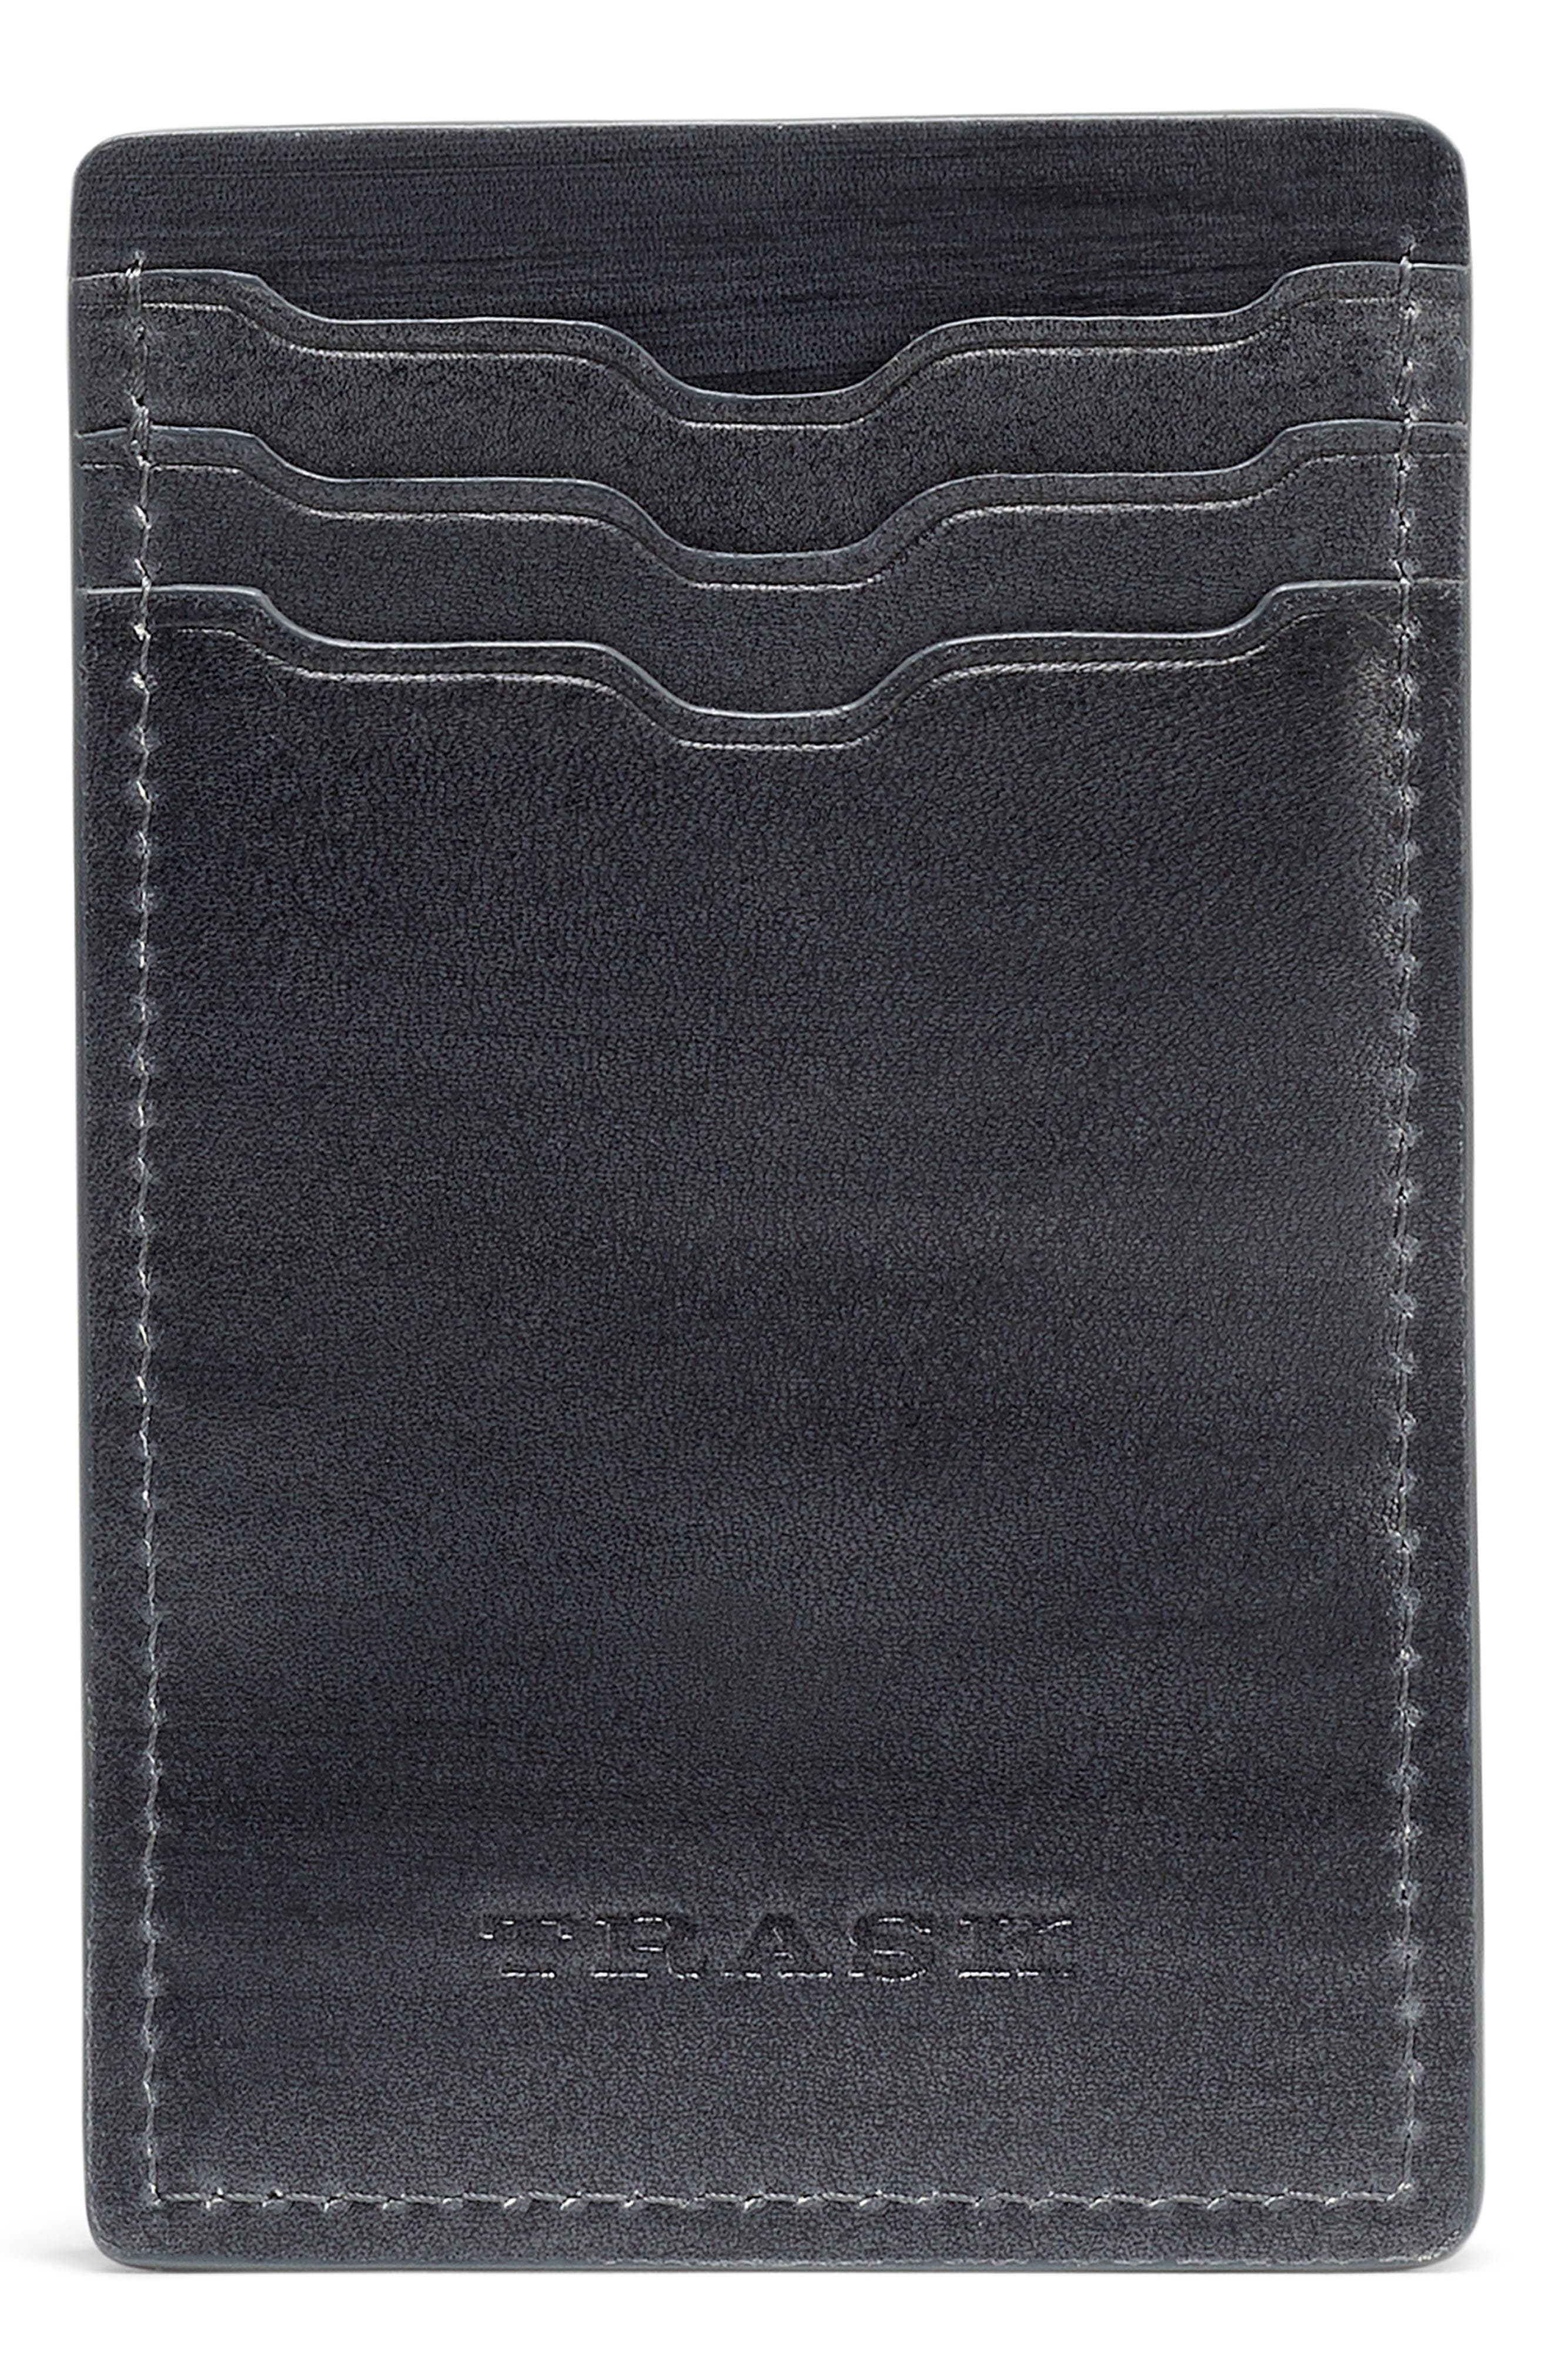 UPC 032076000080 product image for Men's Trask Dylan Front Pocket Money Clip Wallet - | upcitemdb.com